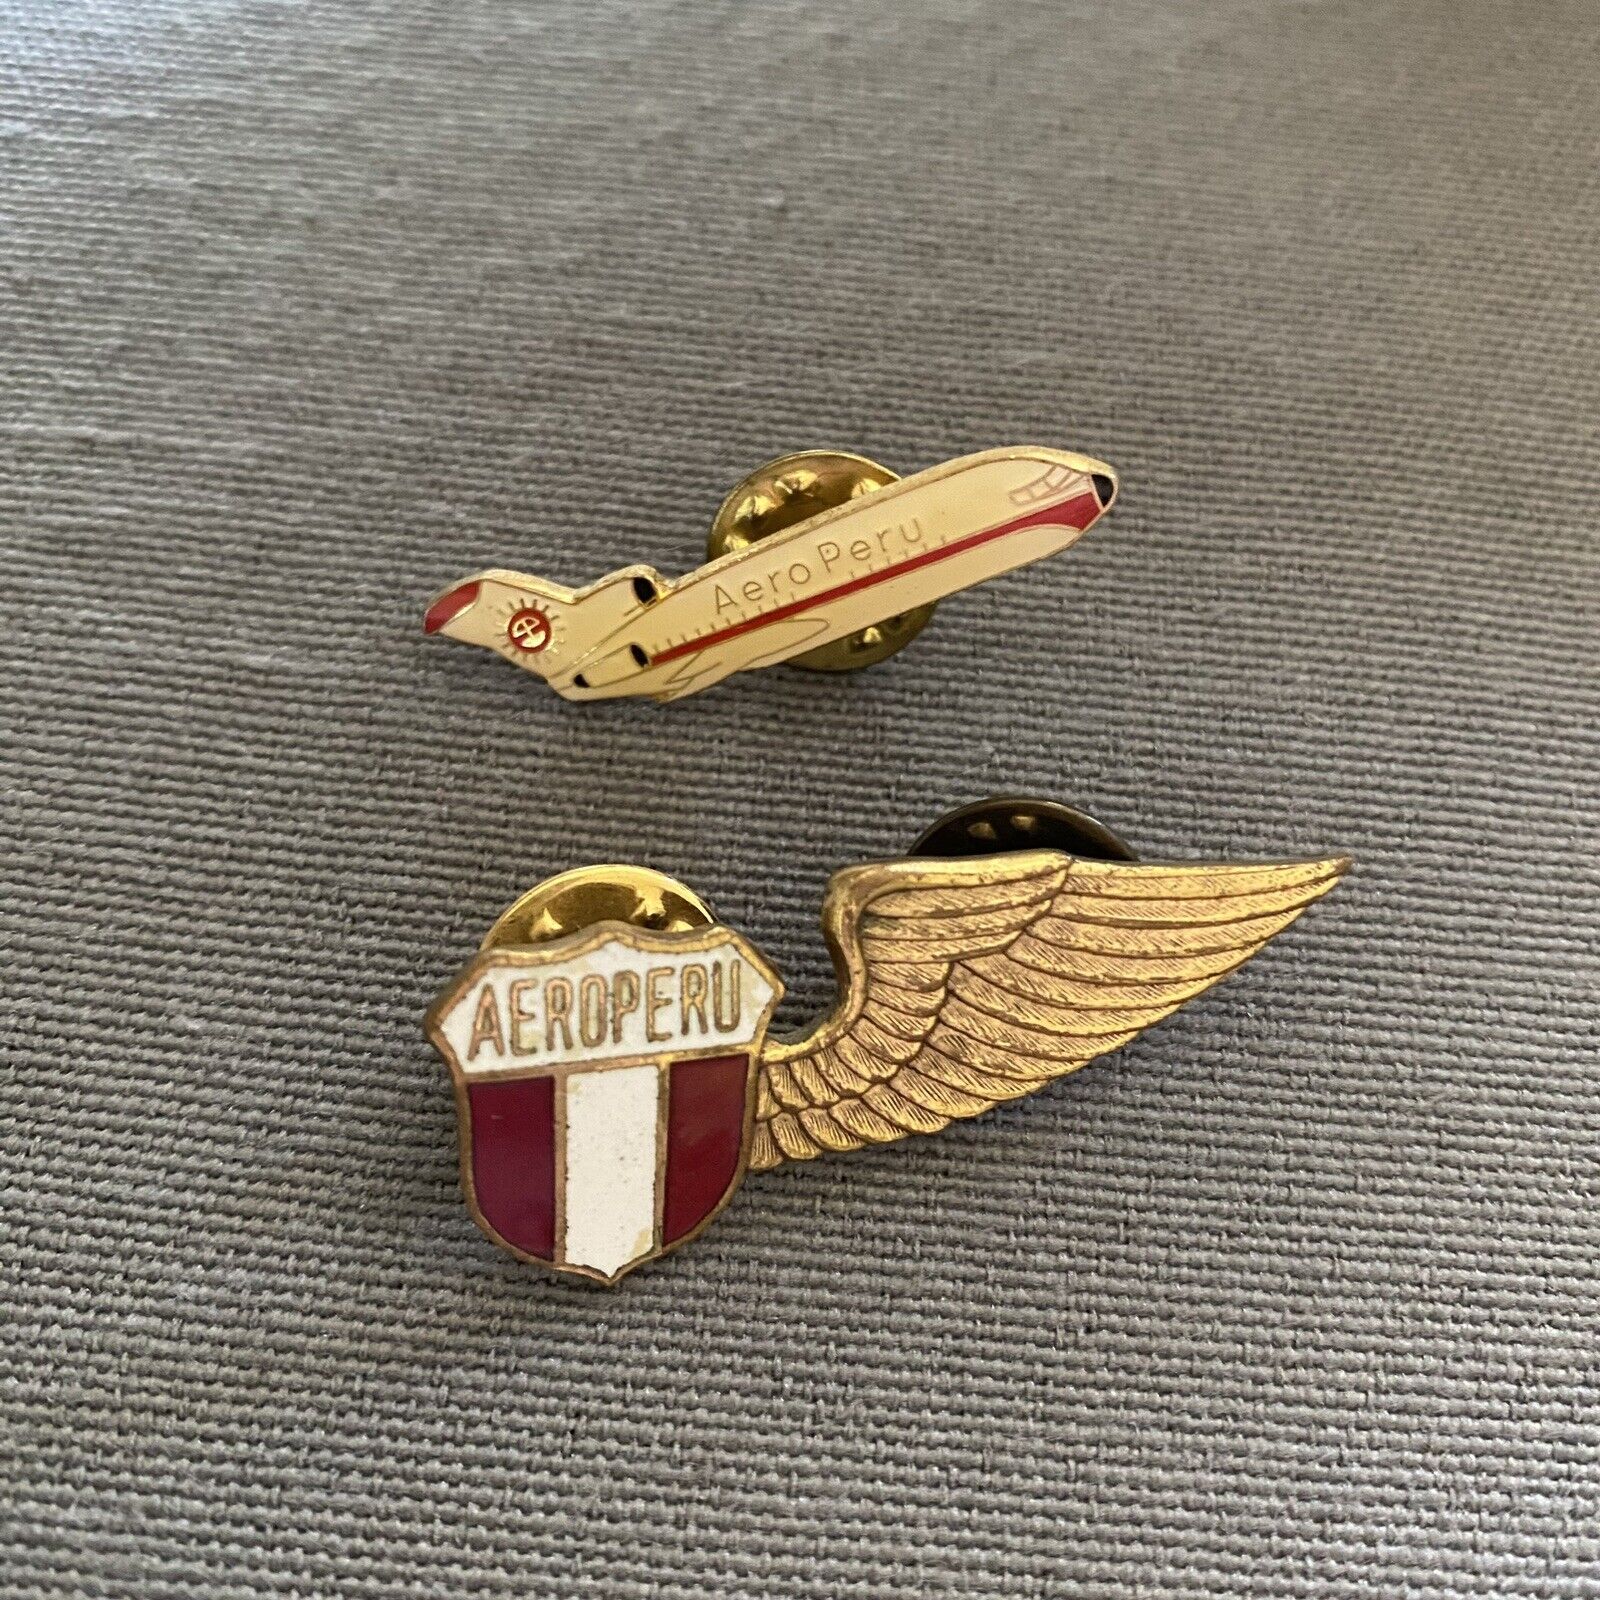 Vintage Aero Peru Enamel Pins x2 Lot Of 2 Stewardess Wing Badge & Air Plane